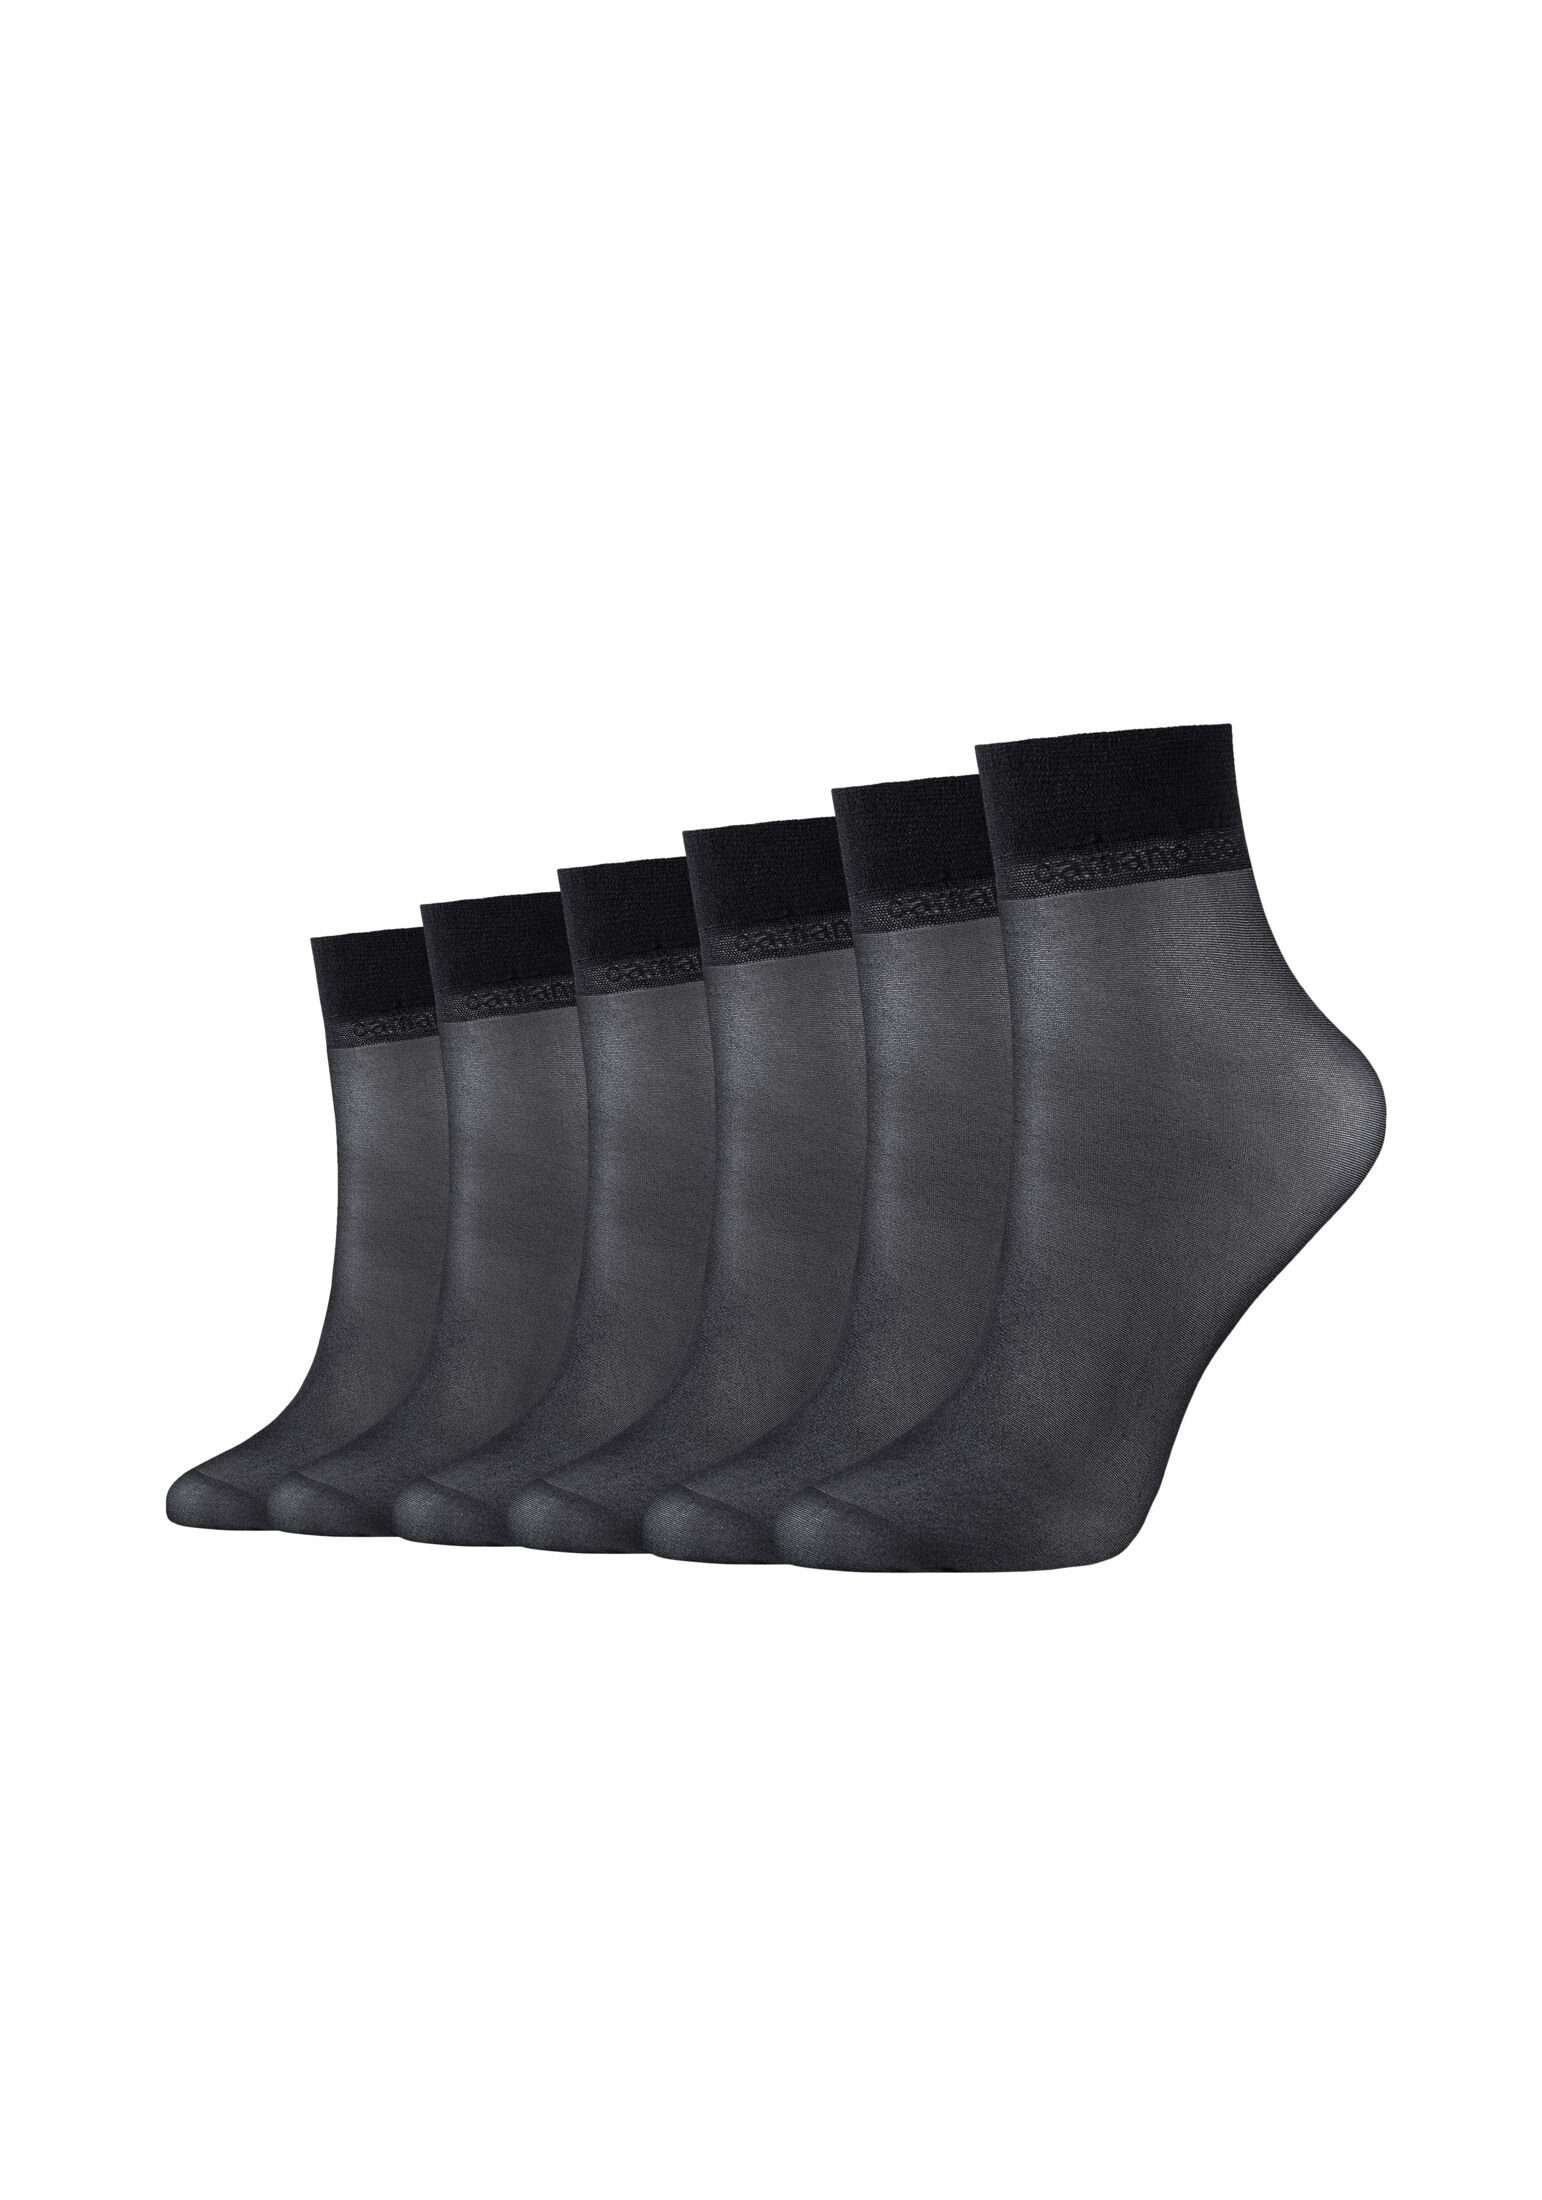 ist empfohlen Camano Socken Socken 6er black Pack